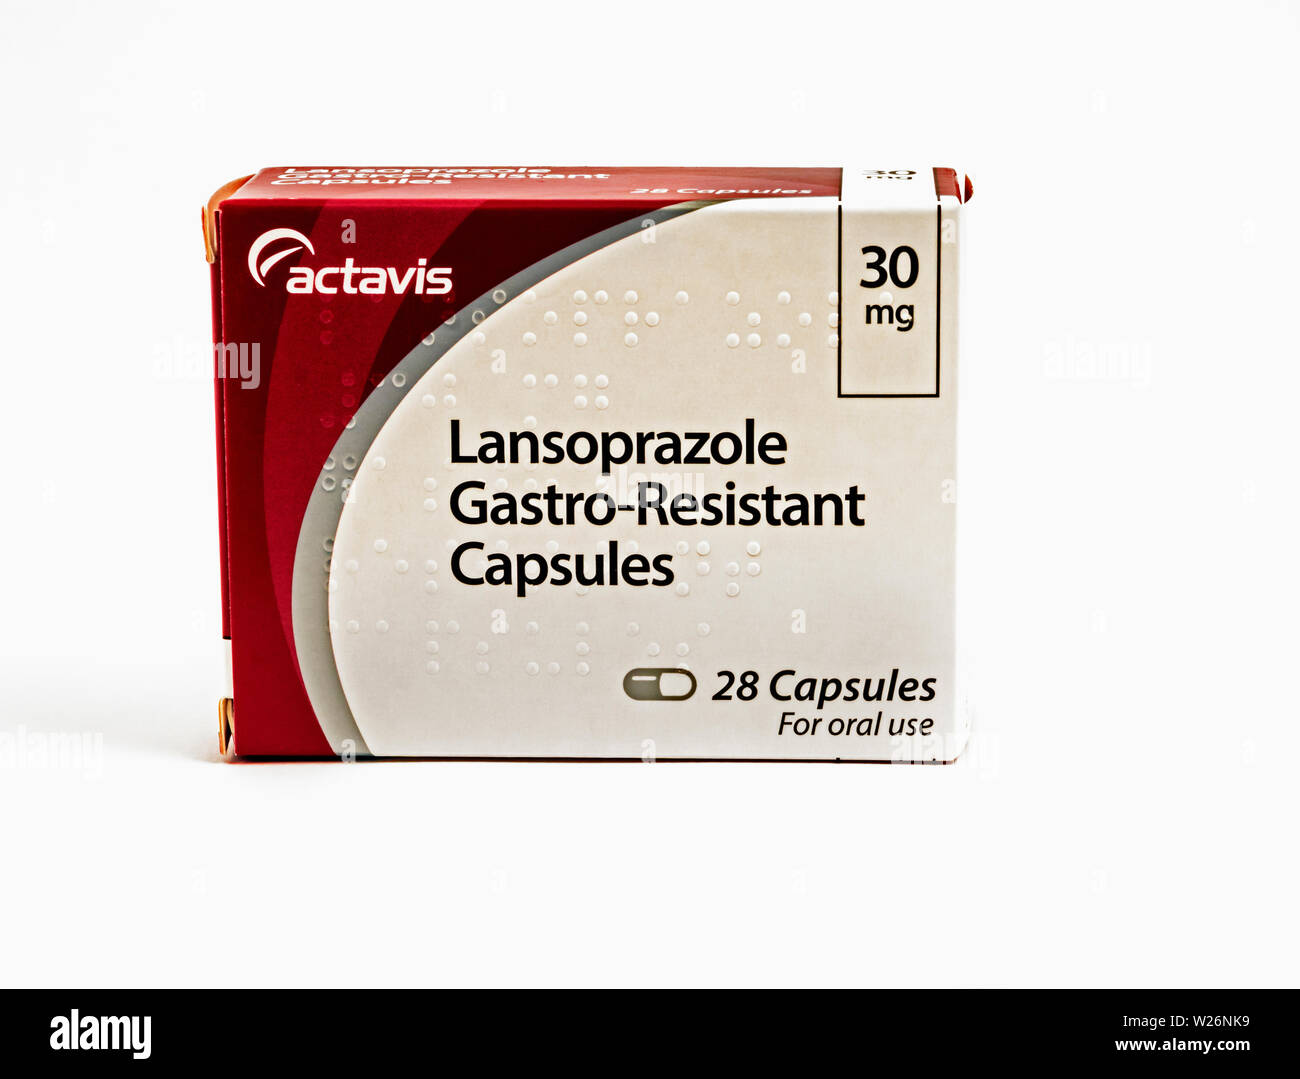 Le lansoprazole, un médicament utilisé pour diminuer l'acidité de l'estomac Banque D'Images